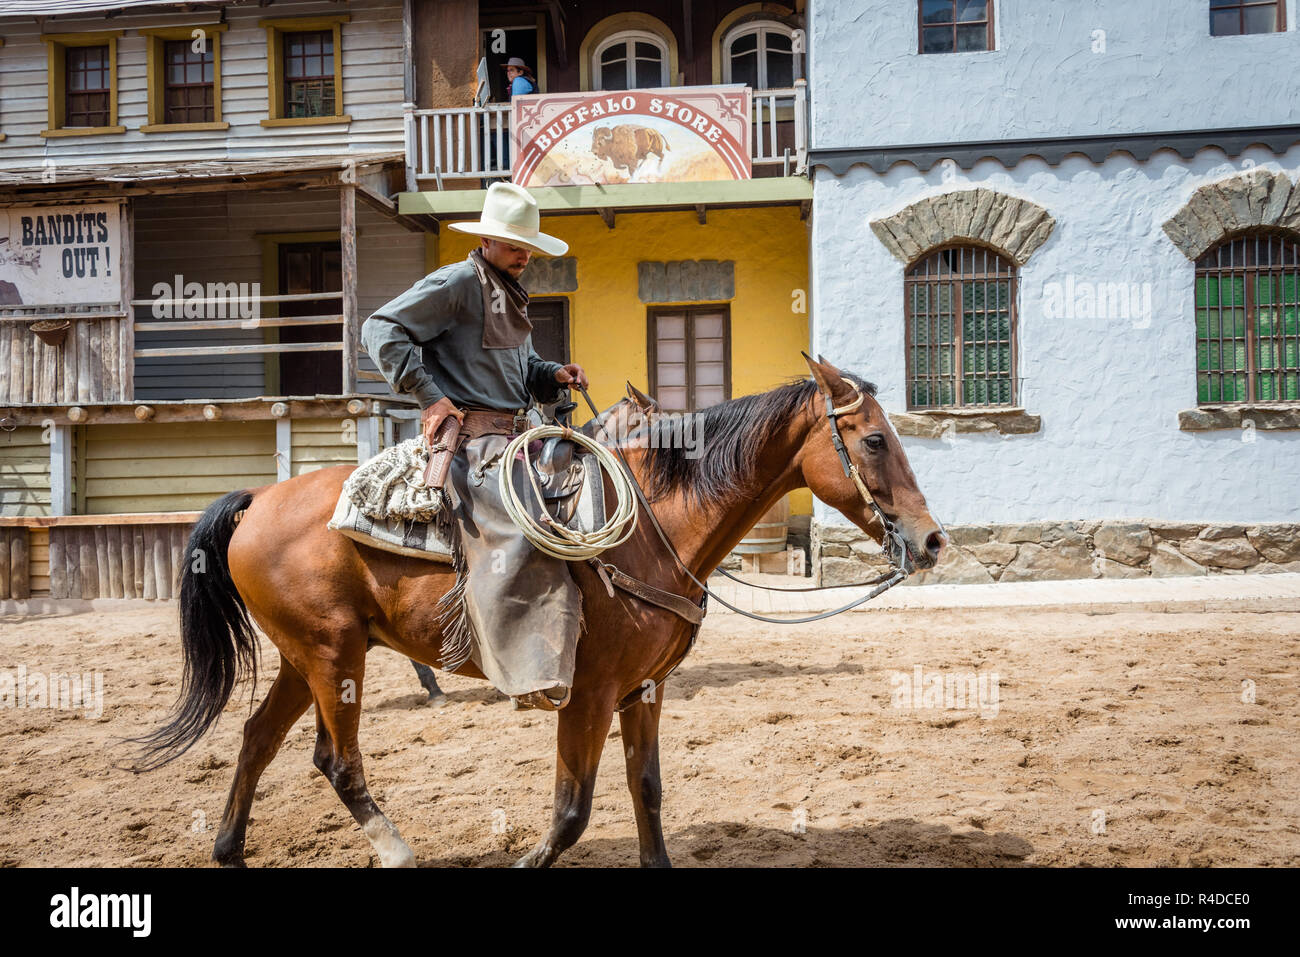 Débarrasser de cow-boy à cheval Sioux City Park San Agustin, Gran Canaria, Espagne Banque D'Images